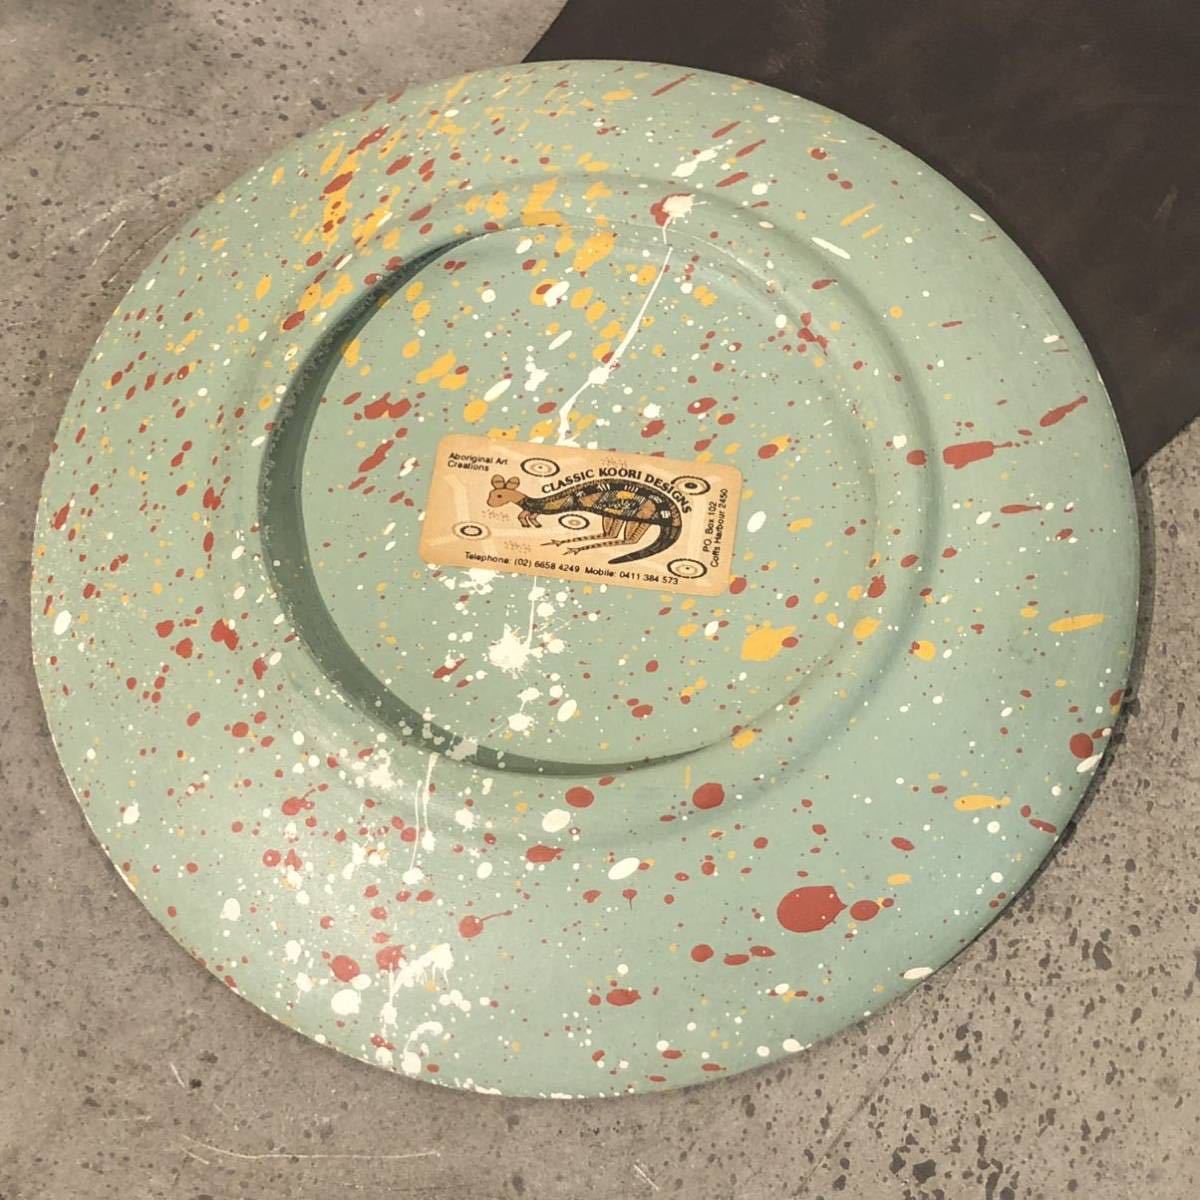 【即決/送料無料】 classic koori designs アボリジニアートプレート 陶磁器製飾り皿 絵皿 一点物 ハンドメイド 海外土産 インテリア_画像3